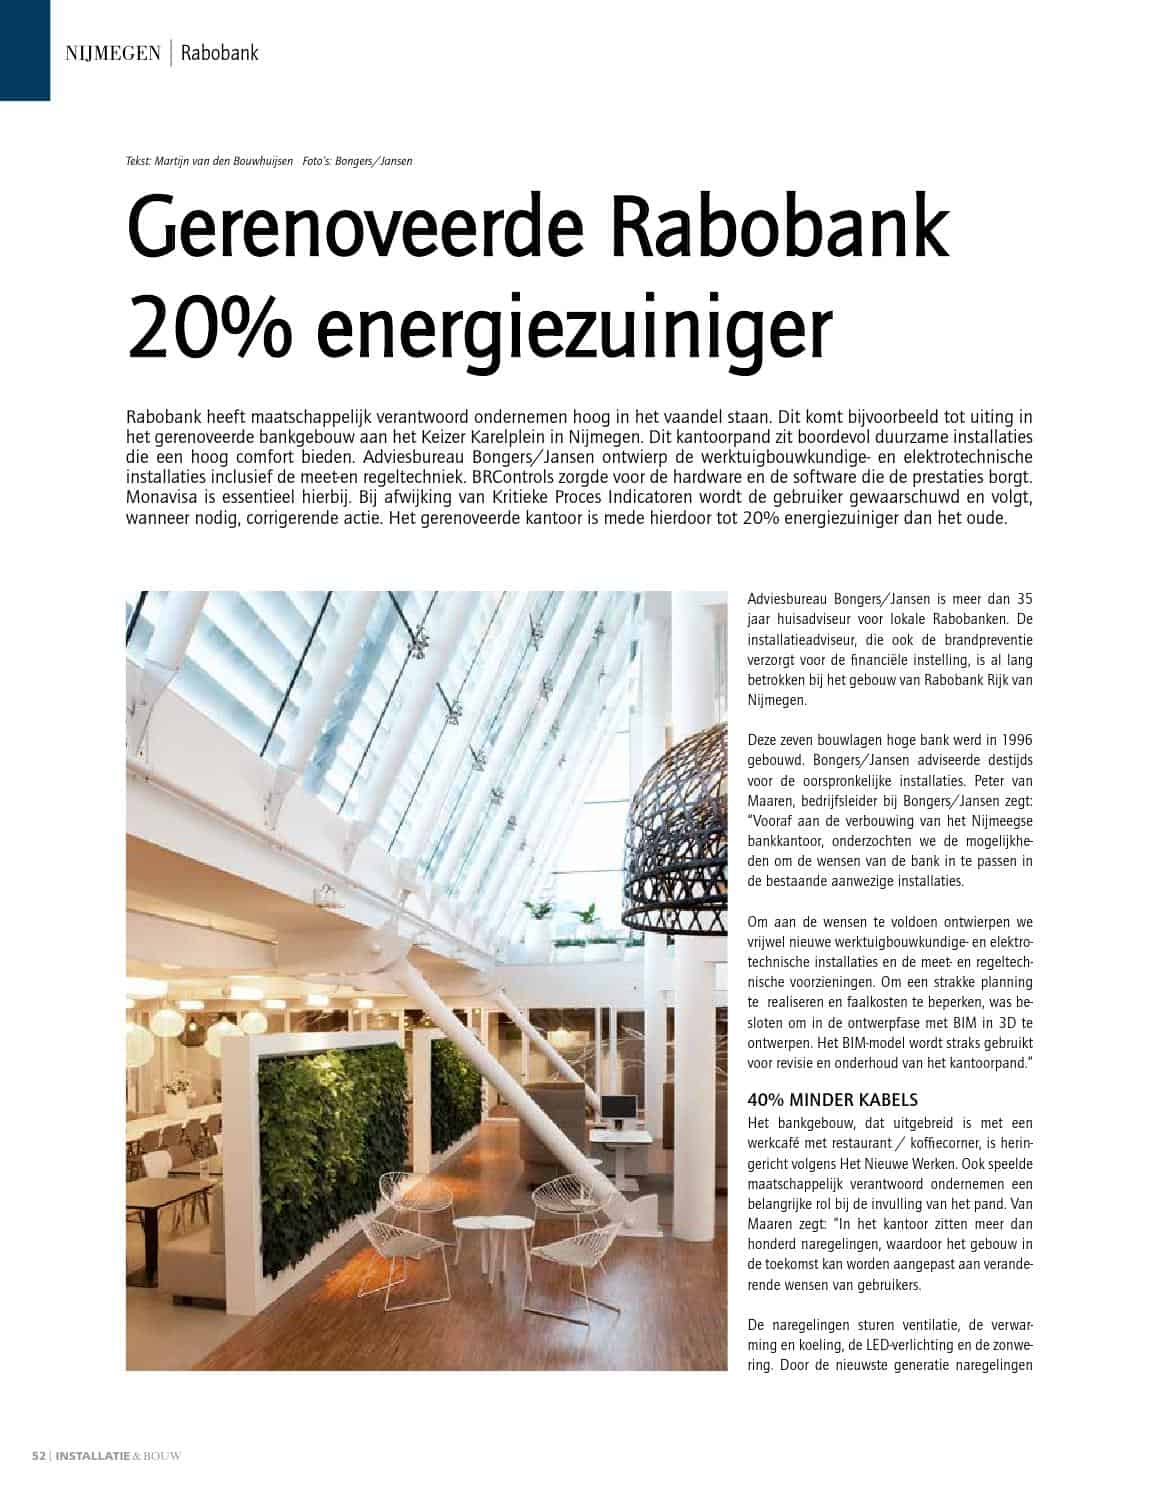 Gerenoveerde Rabobank Nijmegen 20% energiezuiniger